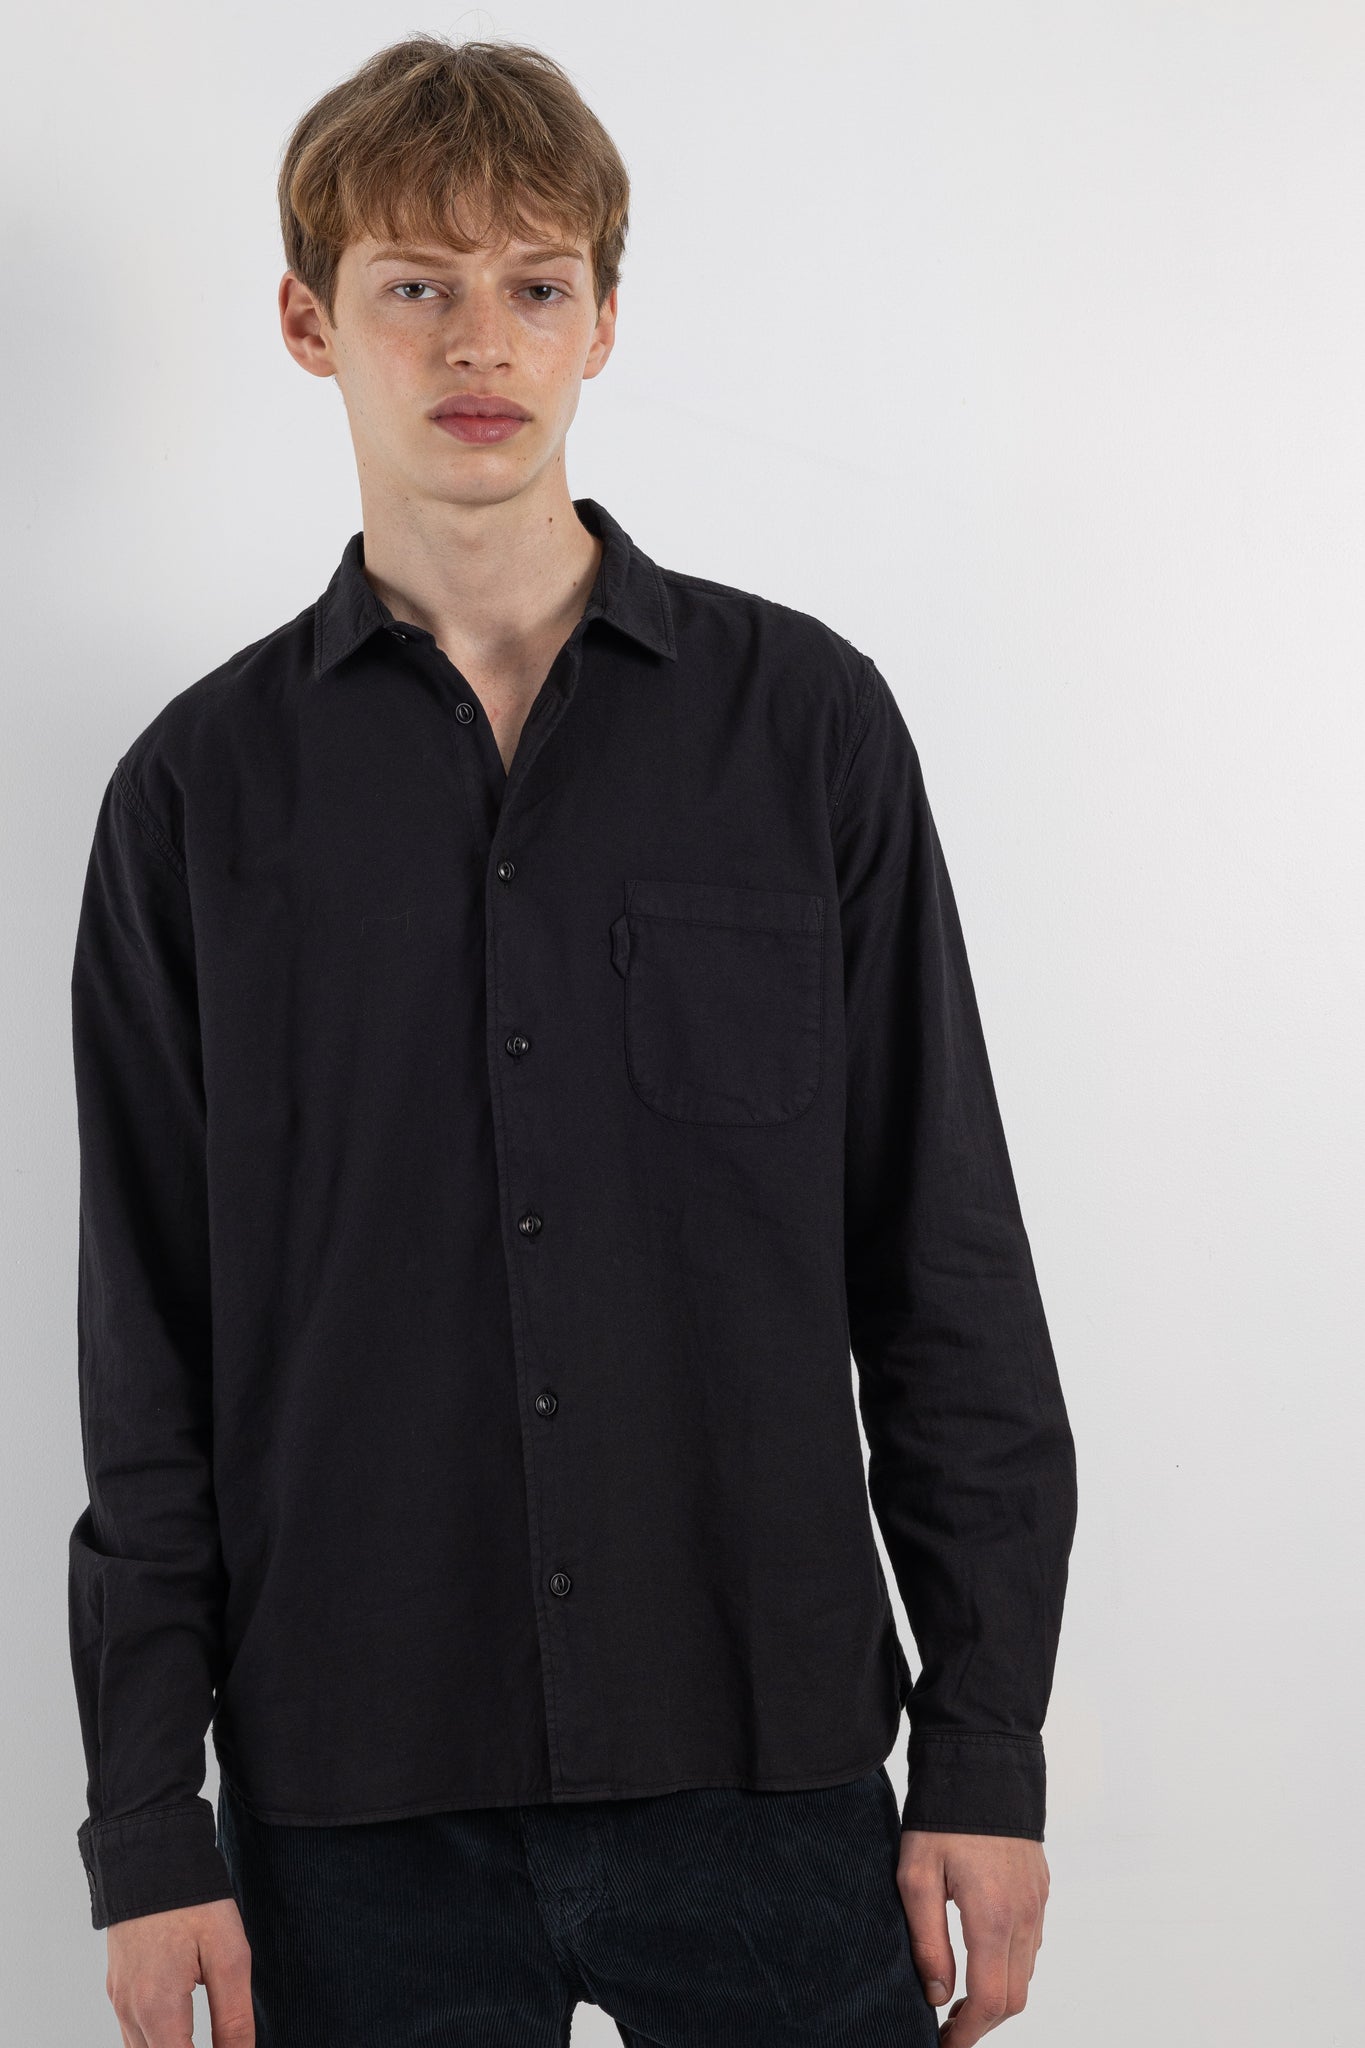 Mens shirt | YMC Curtis shirt | The Standard Store